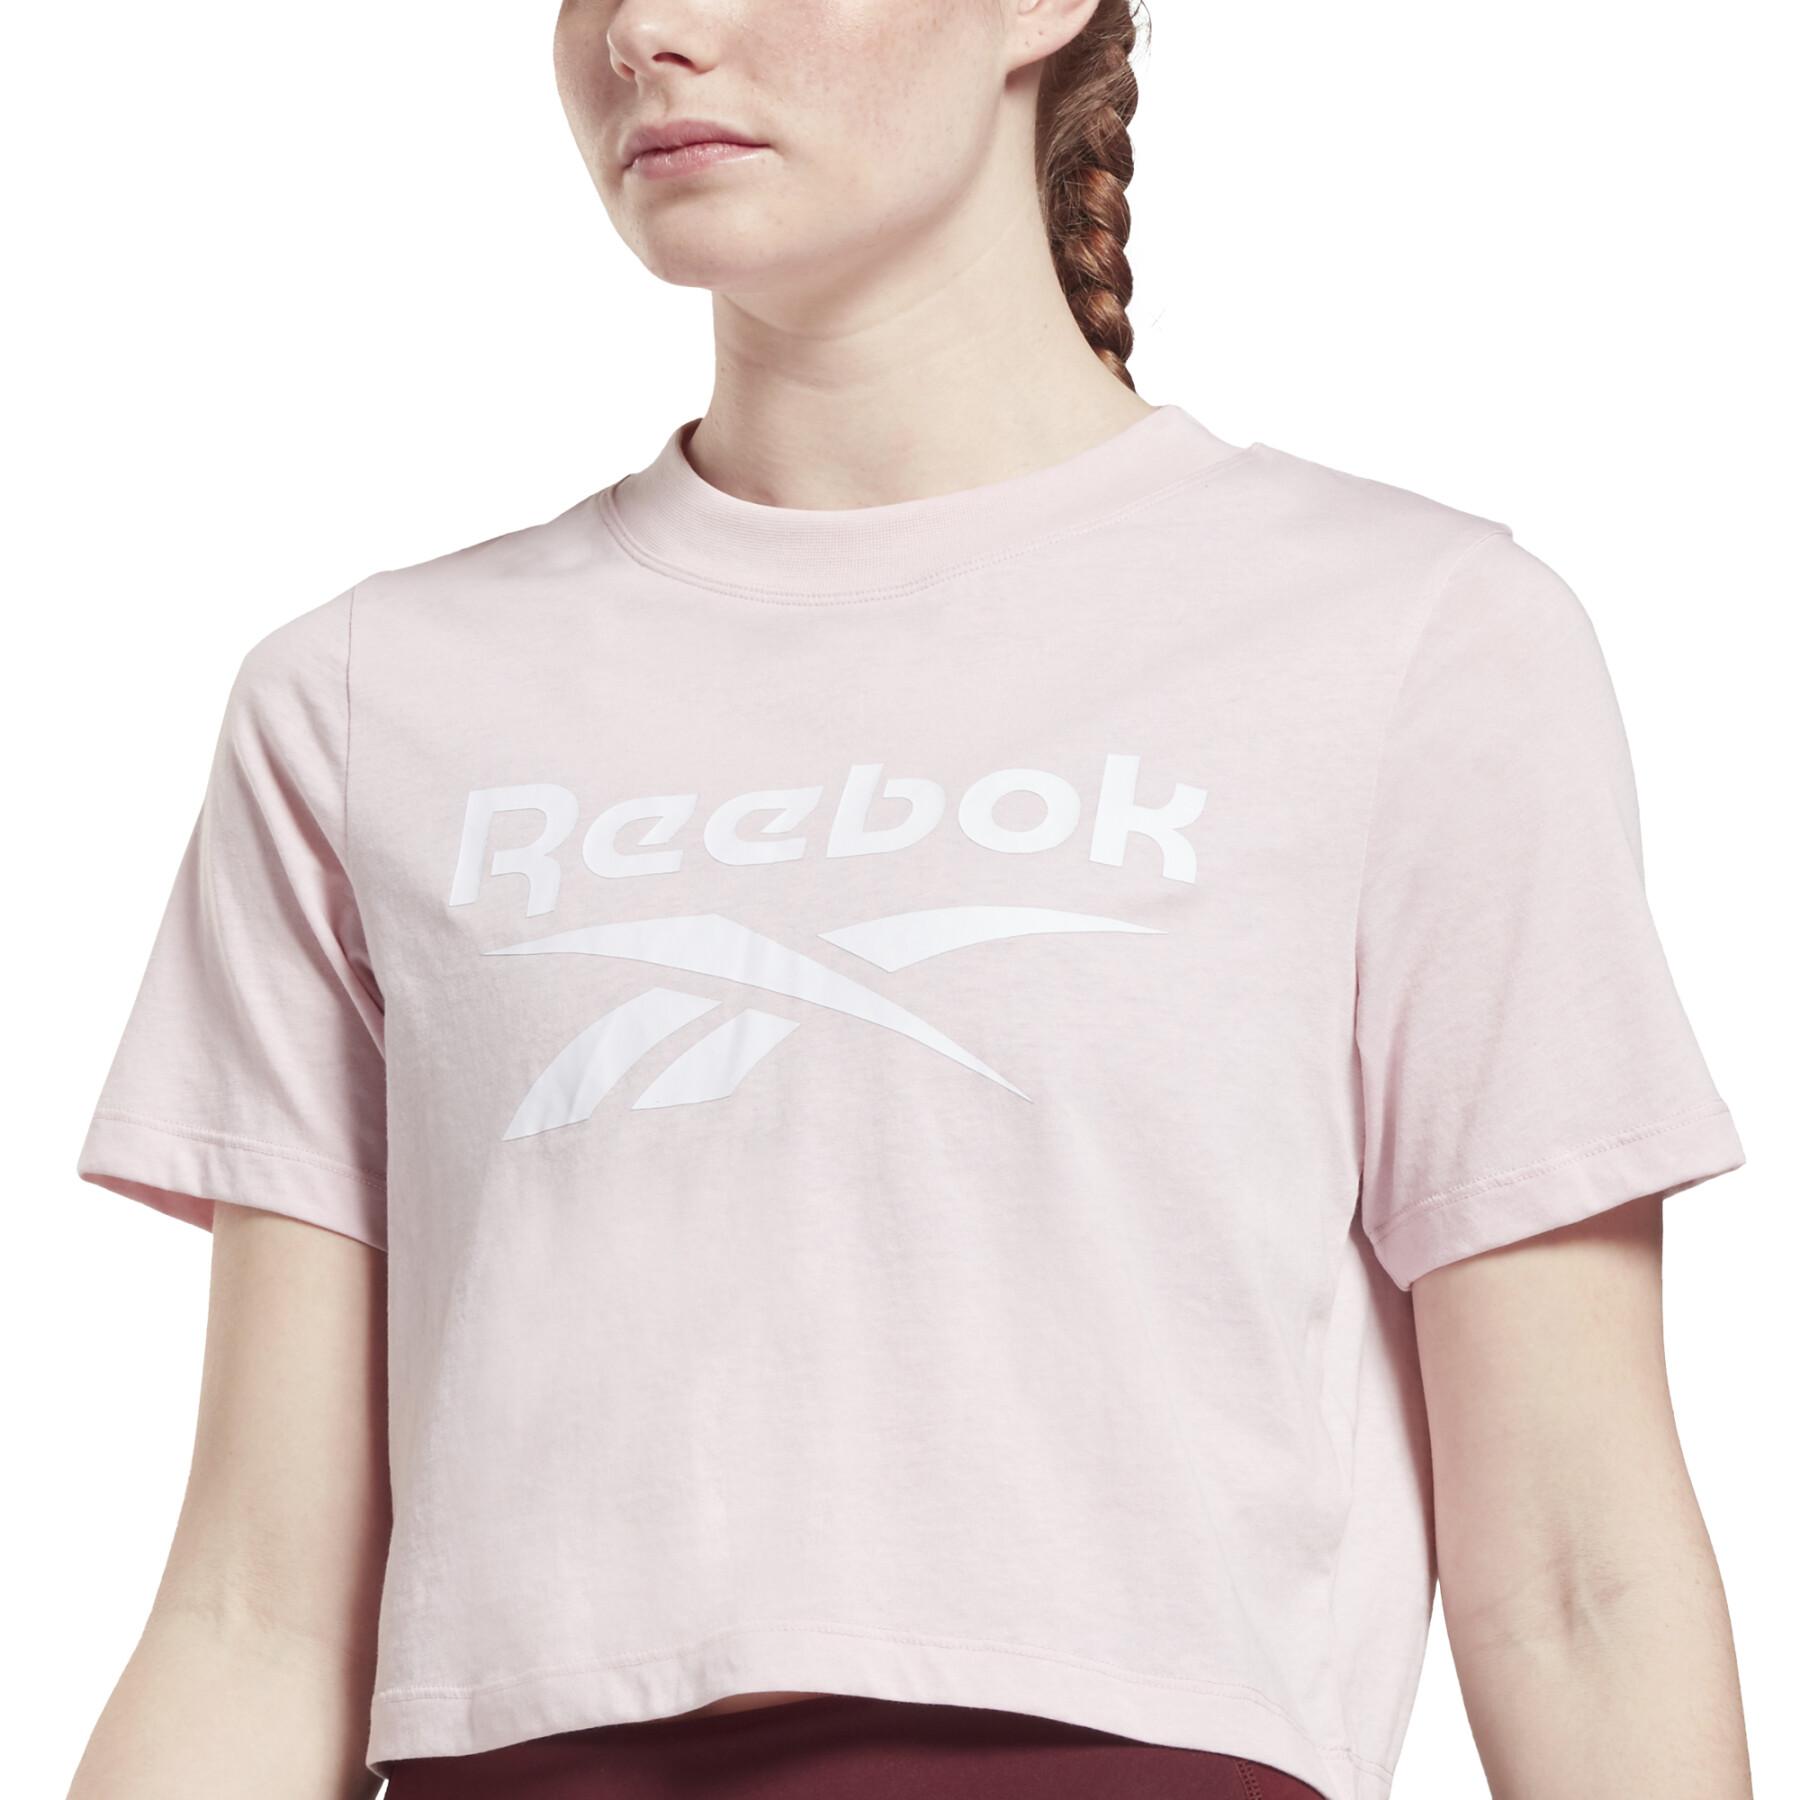 Maglietta da donna Reebok crop Identity